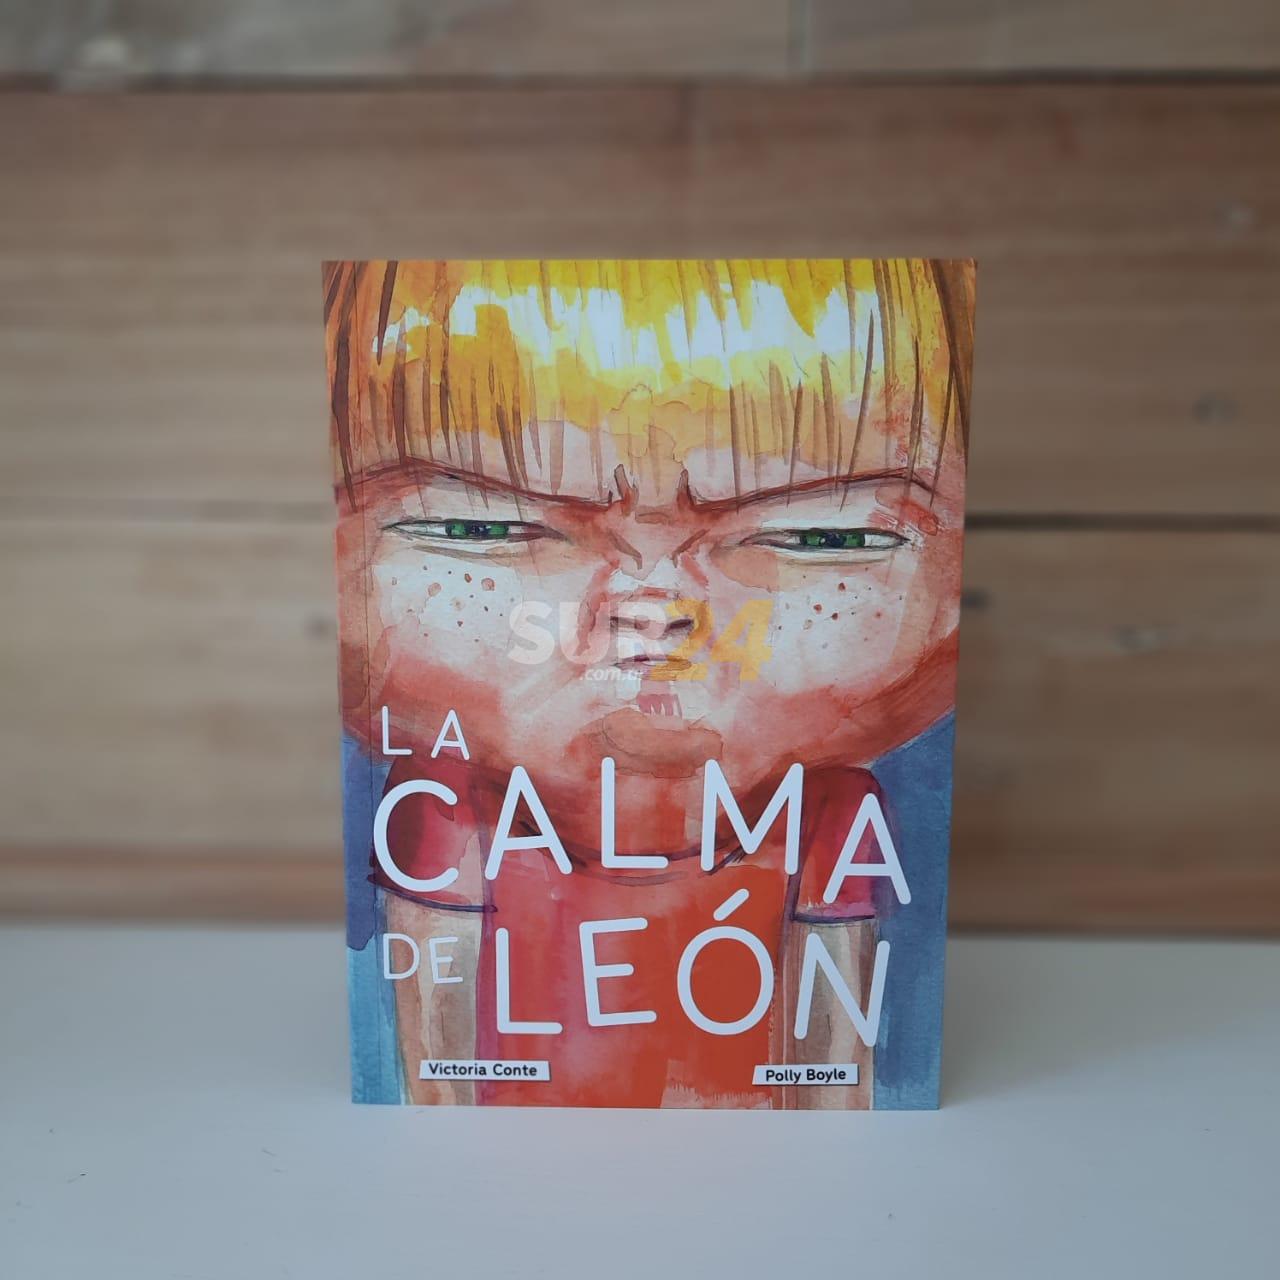 Literatura venadense best seller: “La calma de León” superó las 20 mil unidades vendidas